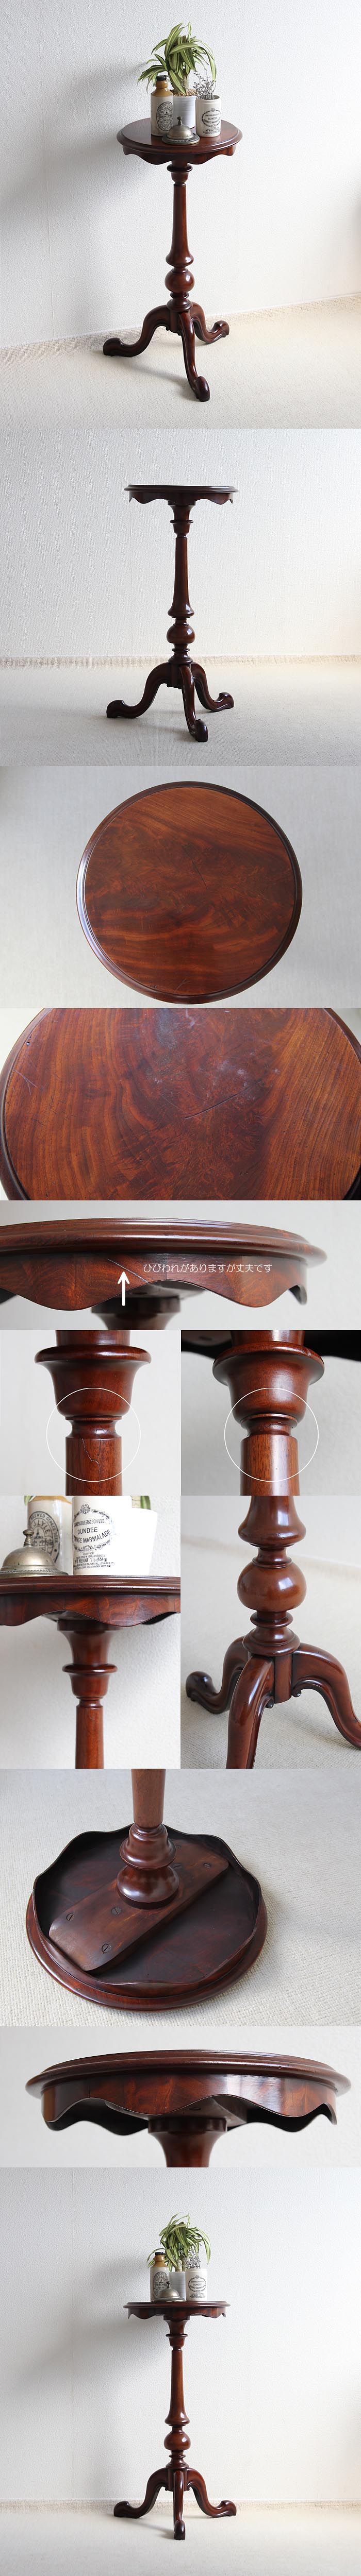 イギリス アンティーク調 ワインテーブル マホガニー 木製テーブル 花台 家具「飾り台にも」V-782